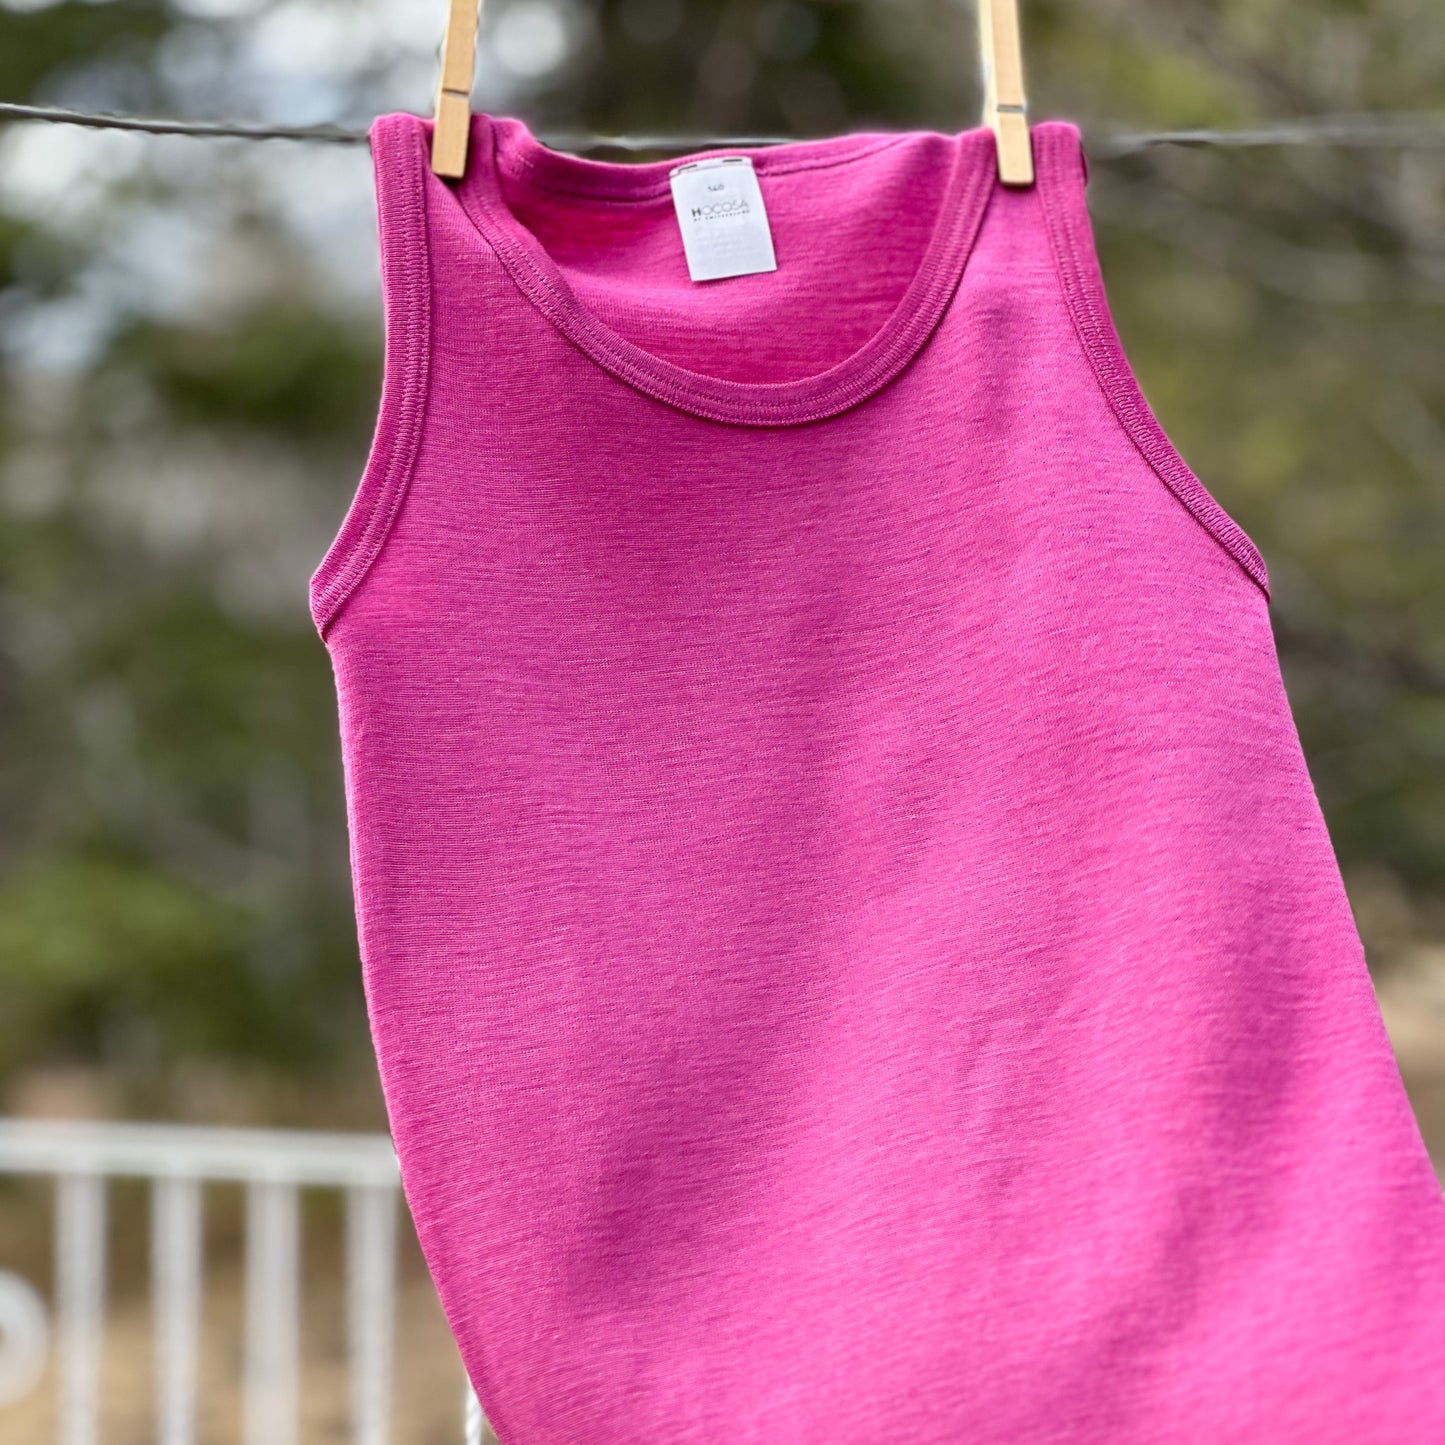 Hocosa Child Sleeveless Shirt, Wool/Silk